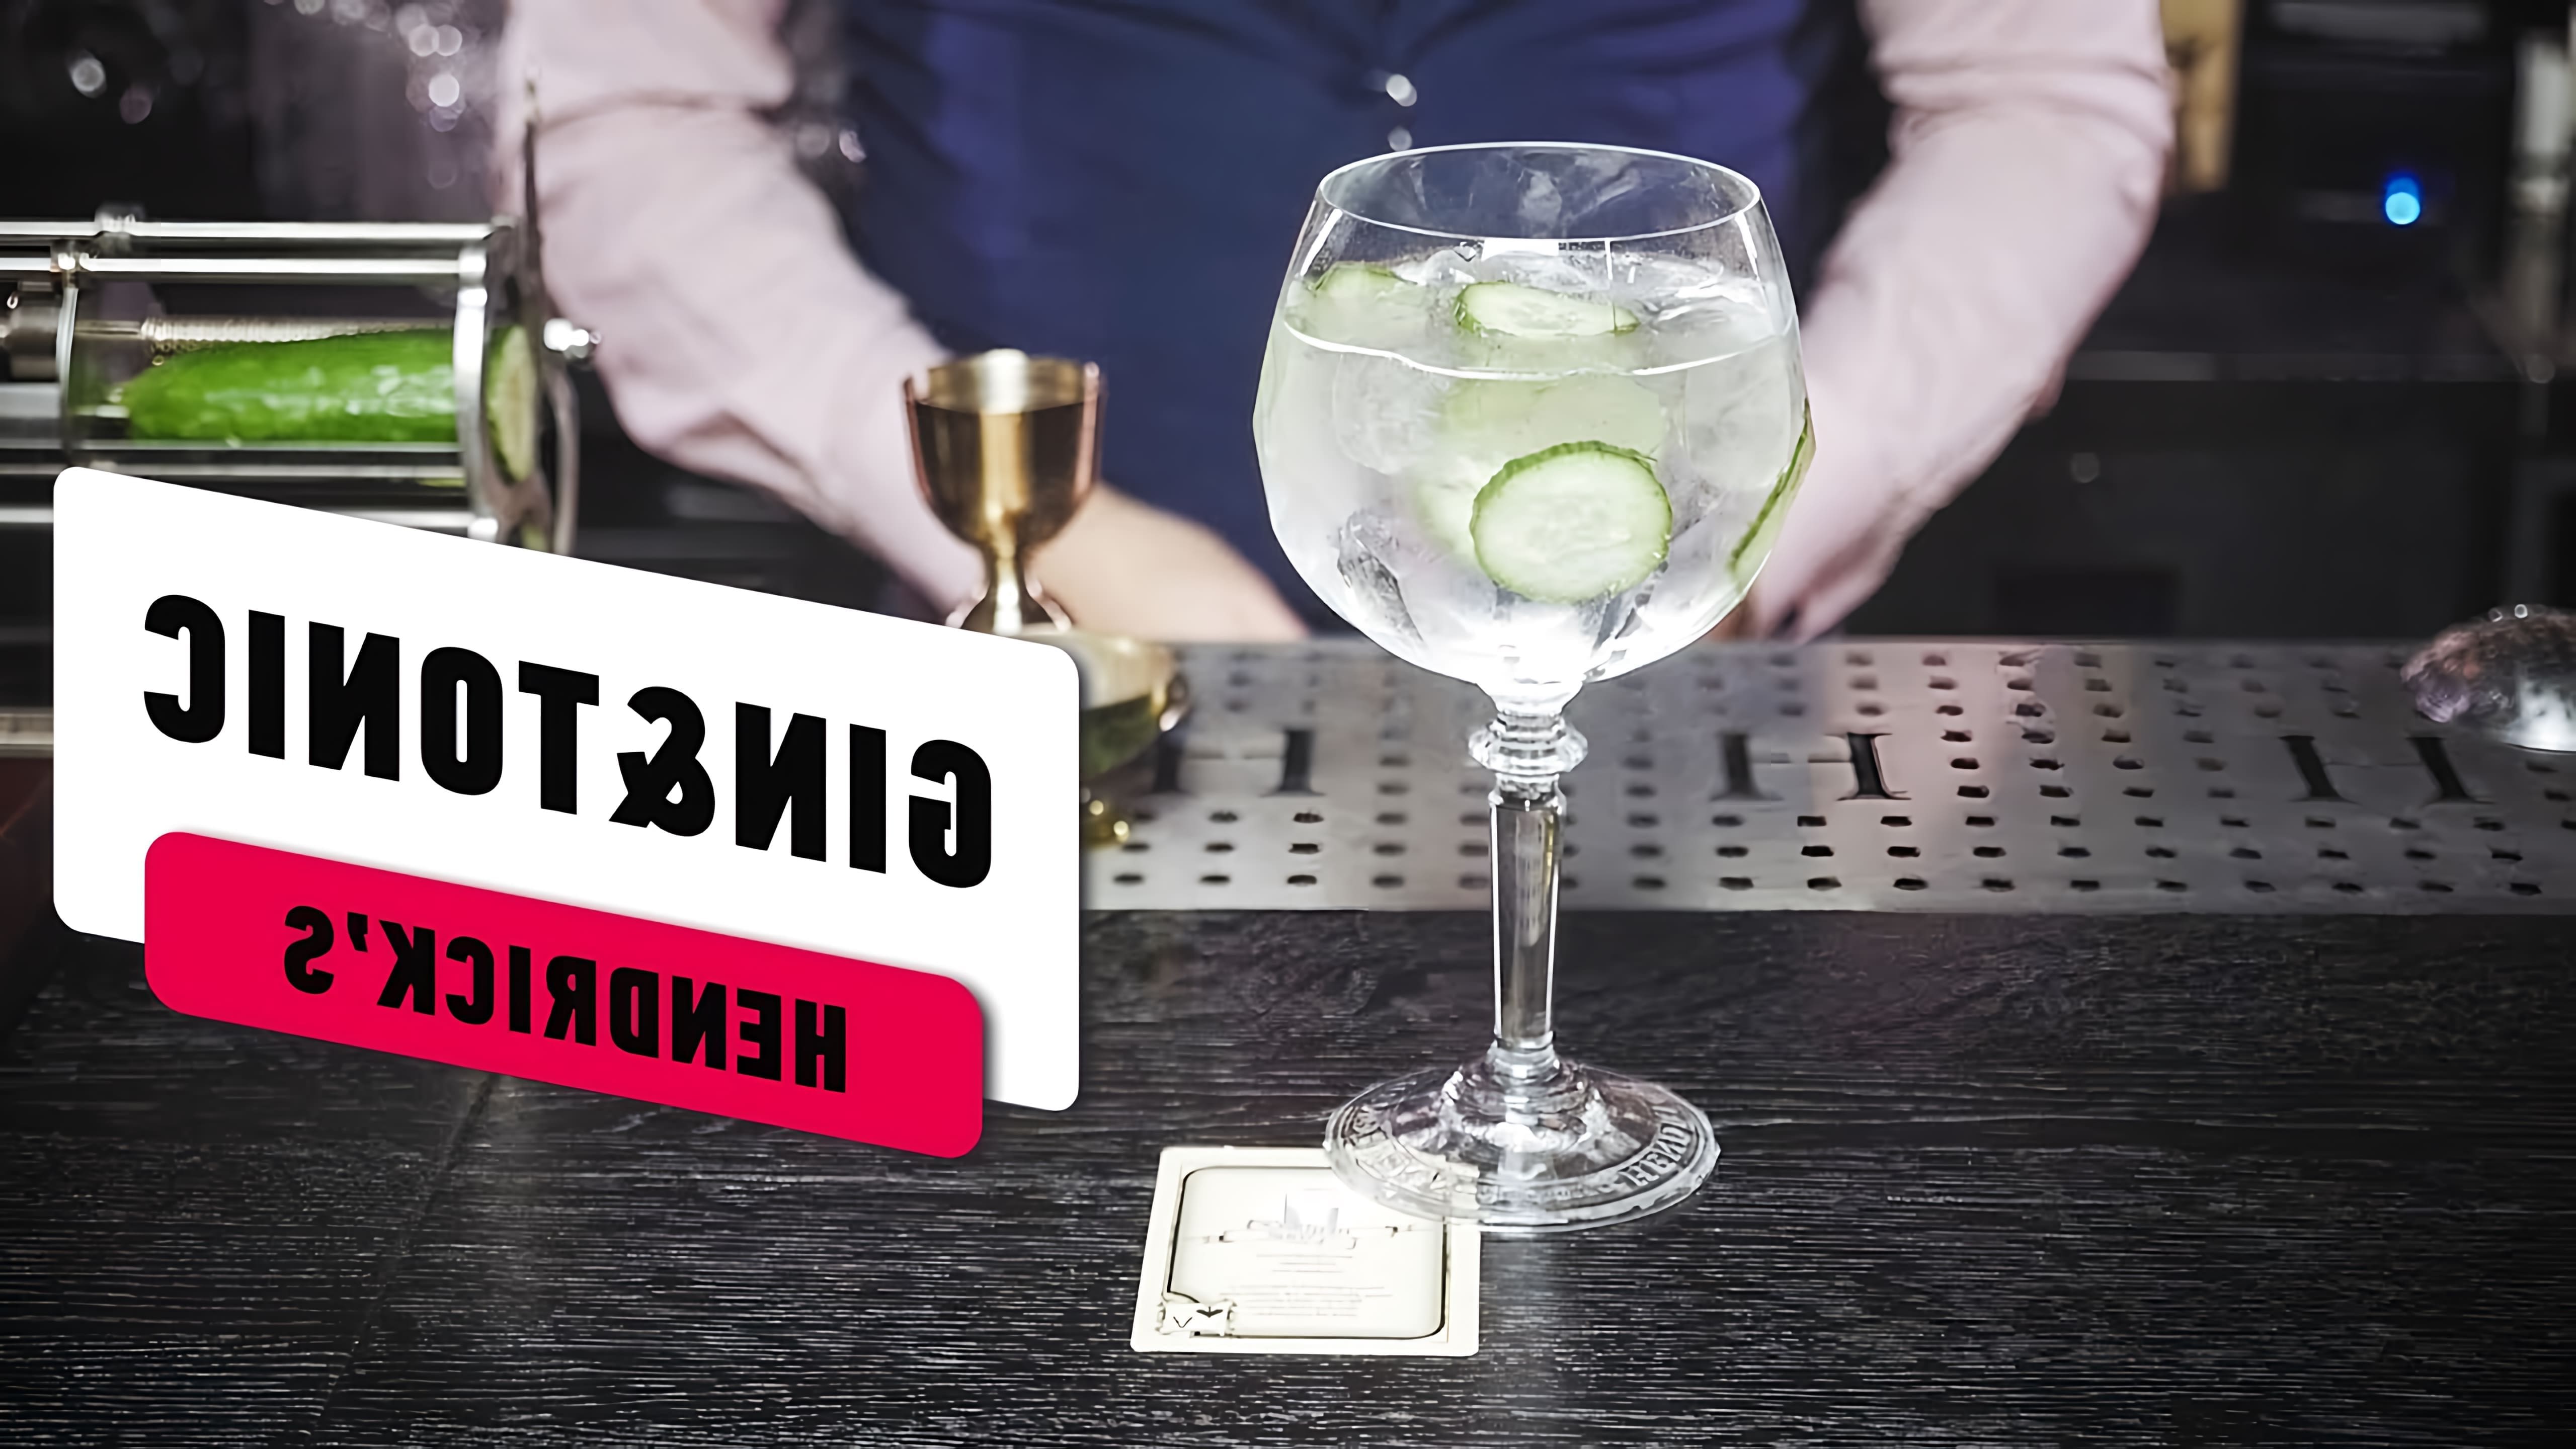 Видео-ролик под названием "Gin & Tonic – Рецепт коктейля" представляет собой обучающее видео, в котором подробно объясняется процесс приготовления классического коктейля Gin & Tonic